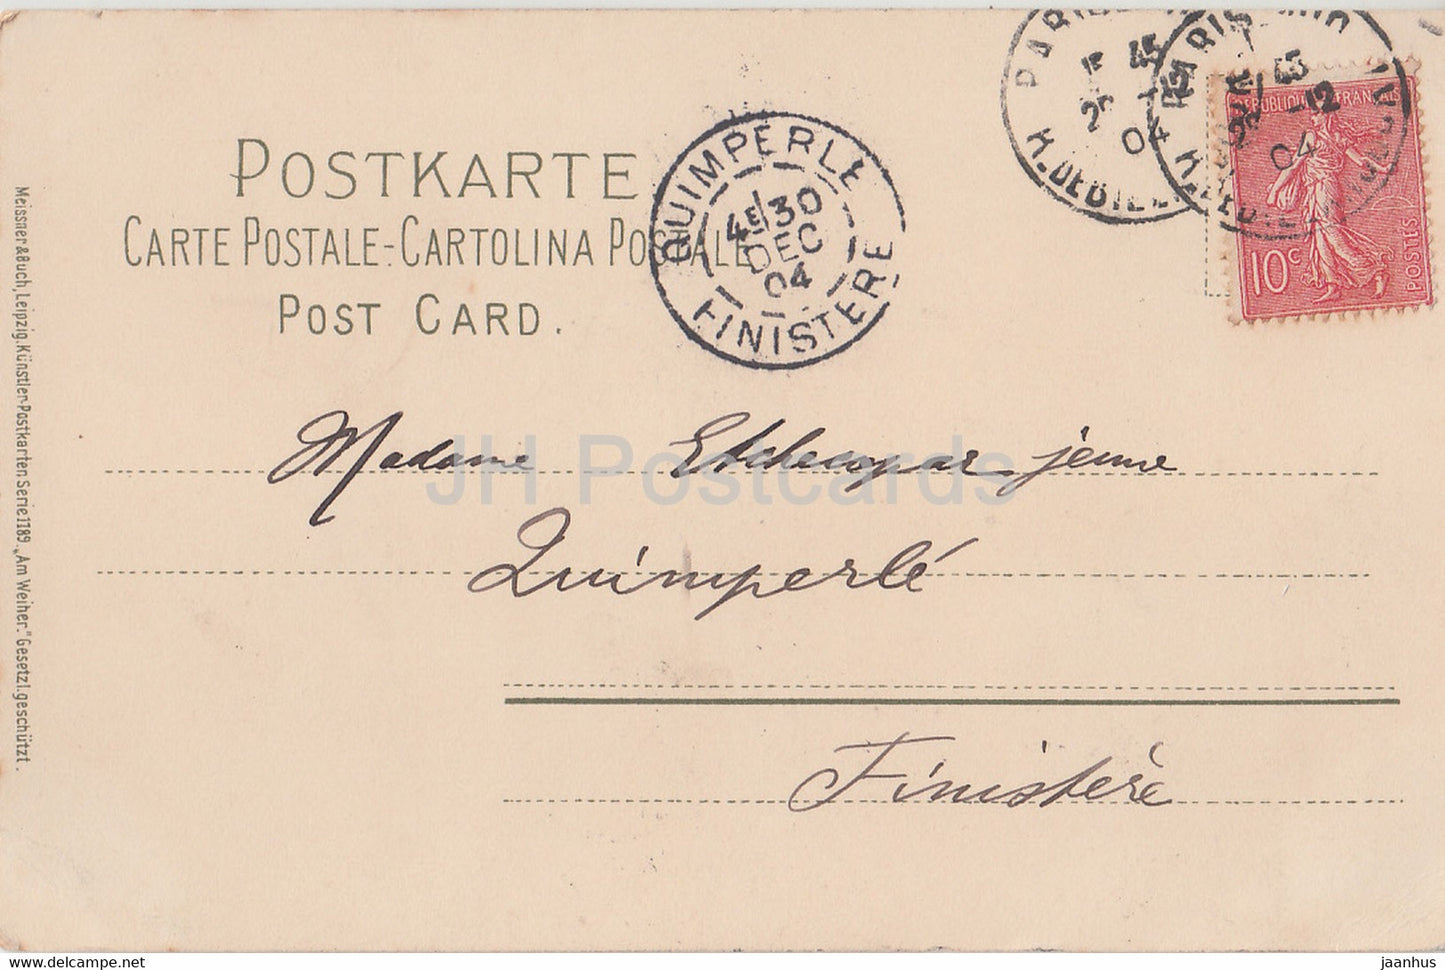 Wassermühle - Schwan - Illustration von FW Hayes - Serie 1189 - alte Postkarte - 1904 - Deutschland - gebraucht